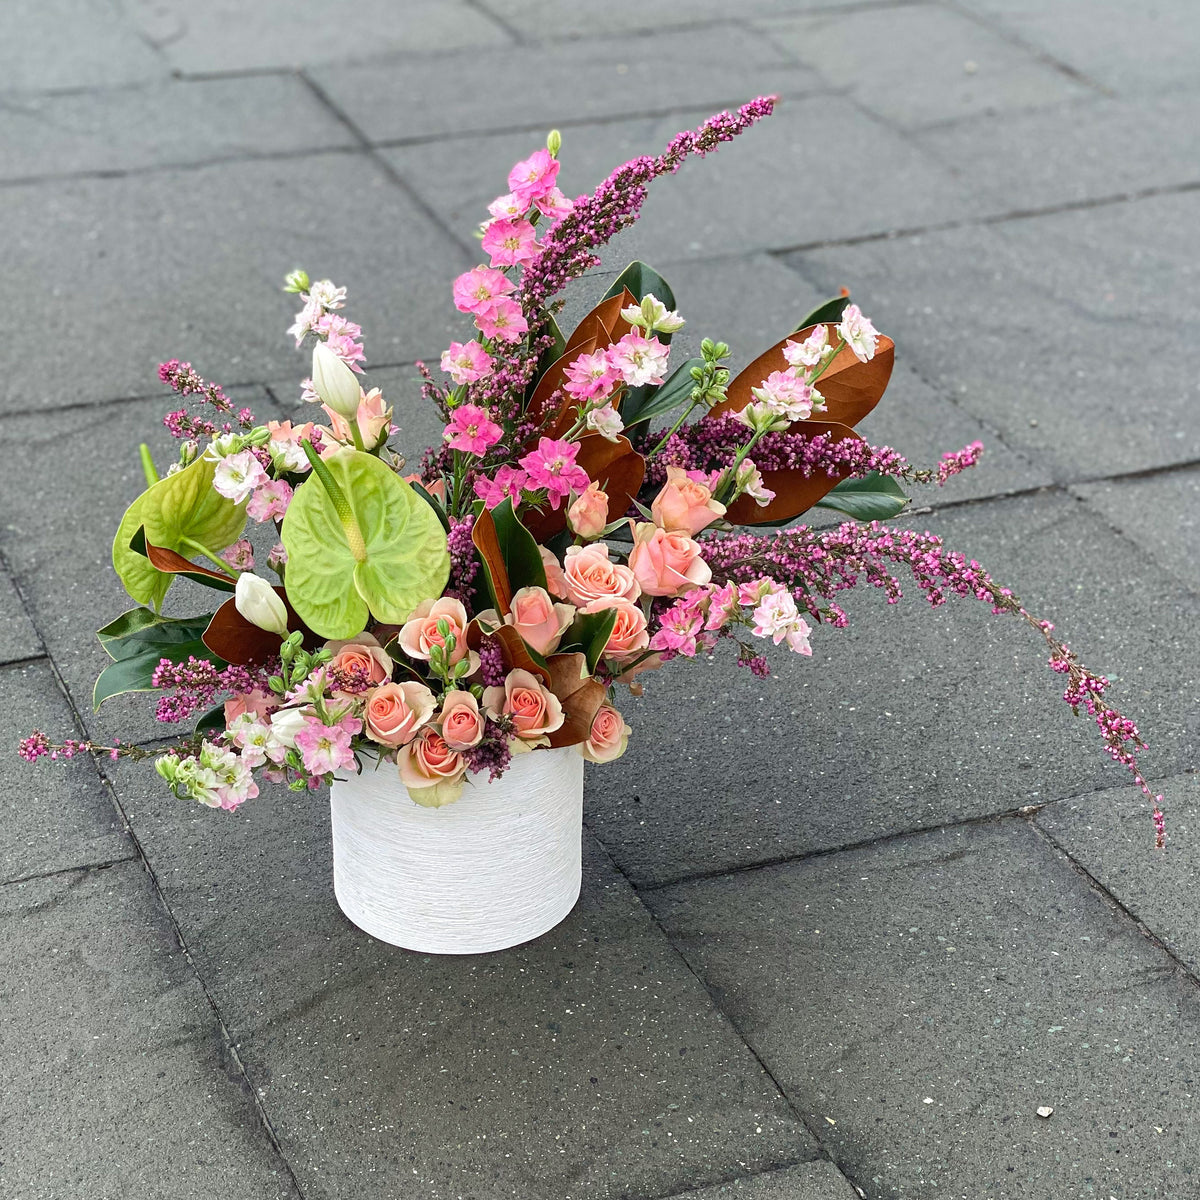 Flowers & Floral Arrangements - Kroger